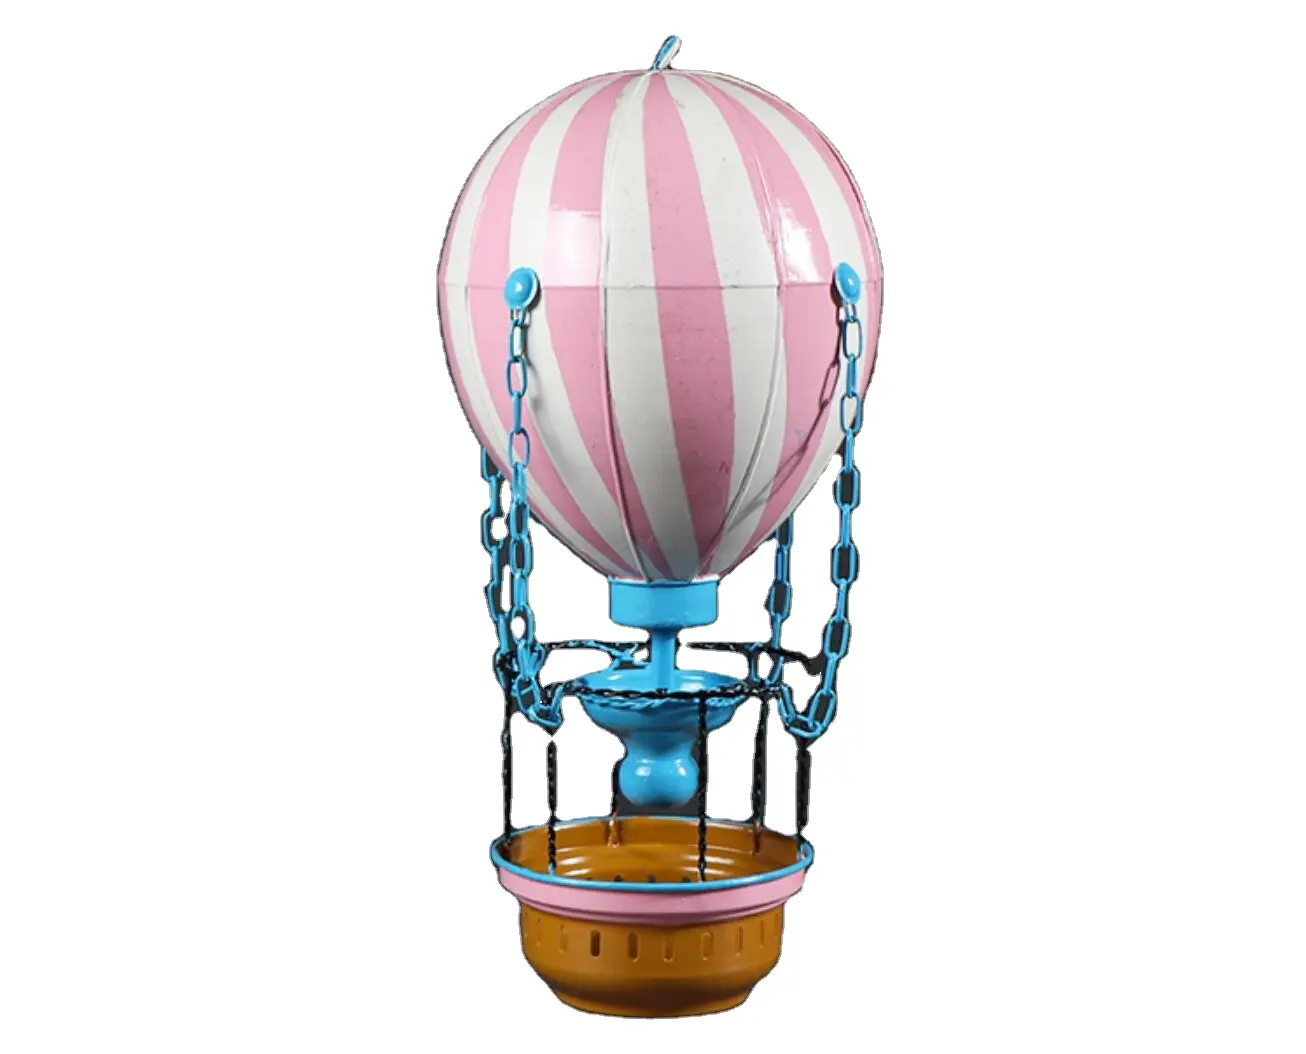 Điêu khắc Inflatable hình dạng Helium bóng bay vải Burner Prop sử dụng khinh khí cầu để bán thương mại Hot Air Balloon trang trí